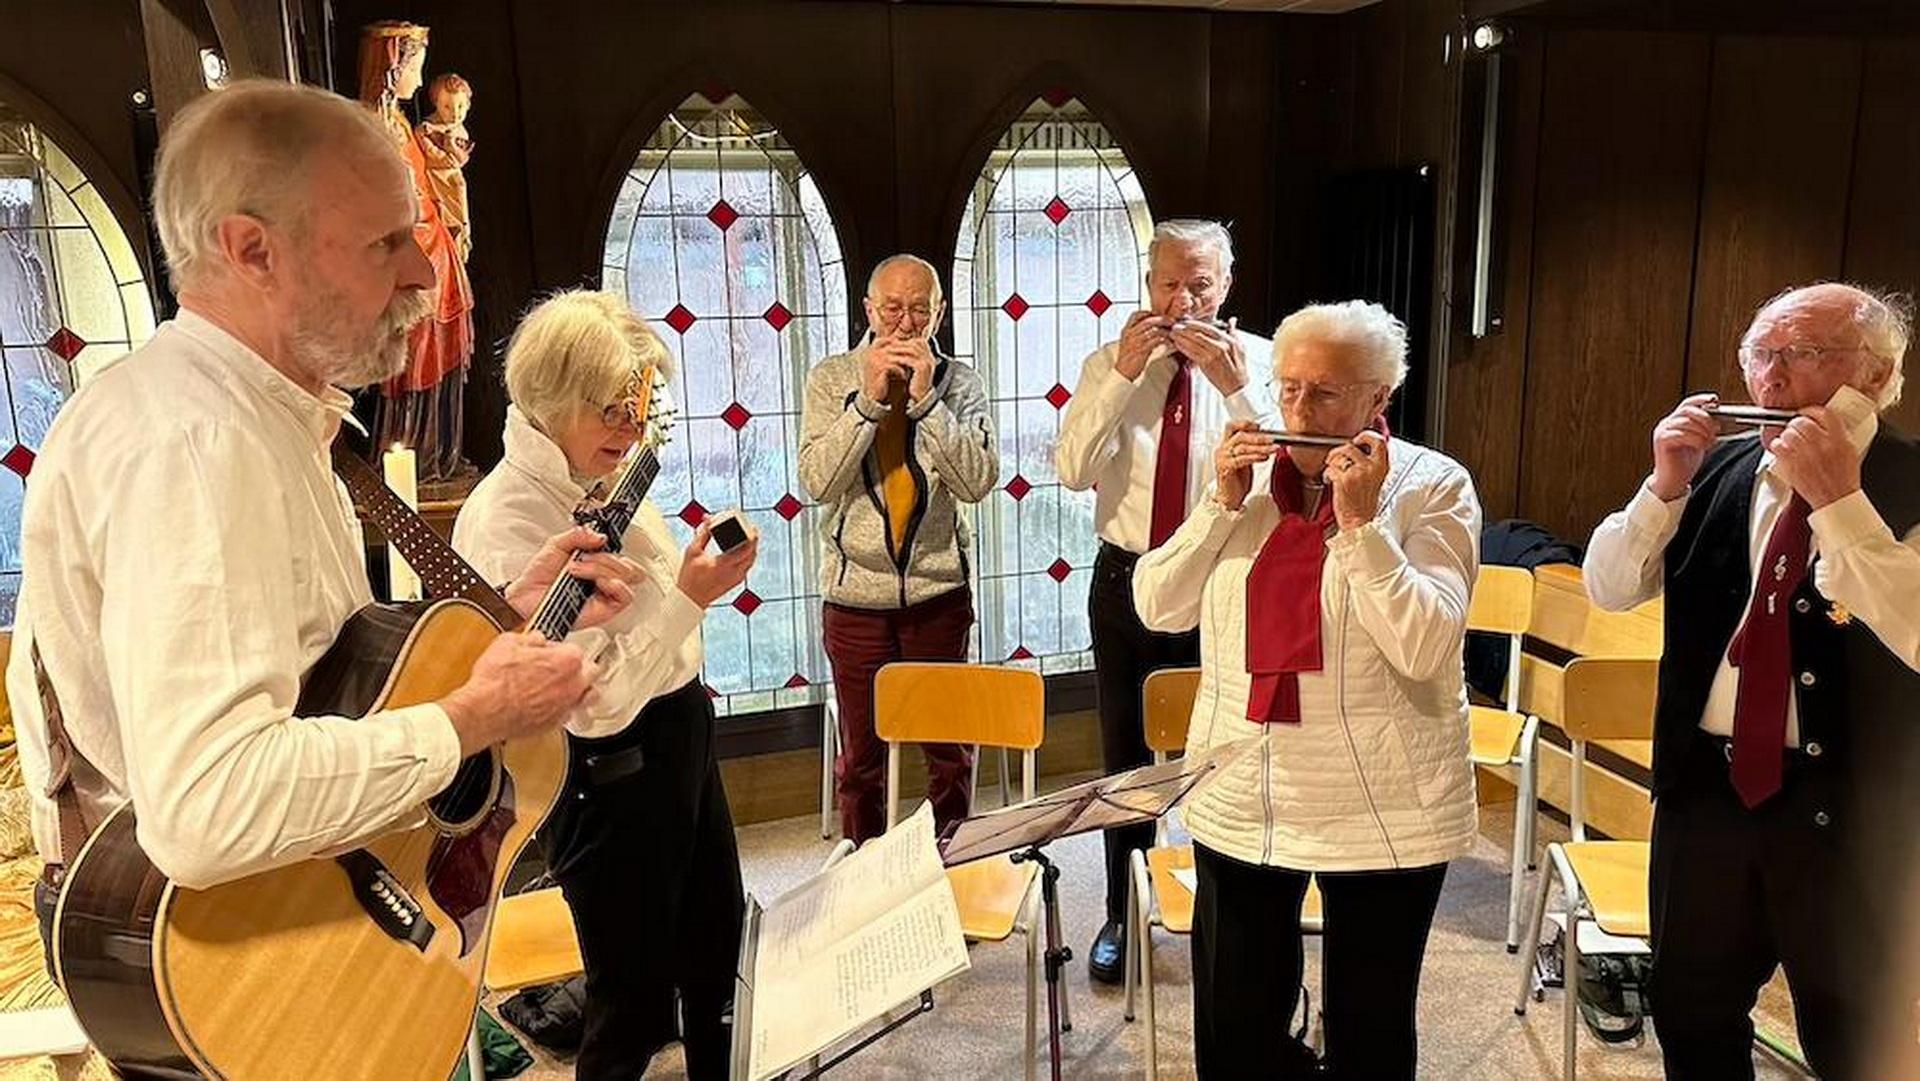 Die Mundharmonikagruppe „Harmonica Sounds“ aus Euskirchen begeisterte die Besucher in der Hauskapelle der Communio in Christo mit klassischen englischen und deutschen Weihnachtsliedern nach der Messe am ersten Weihnachtstag.